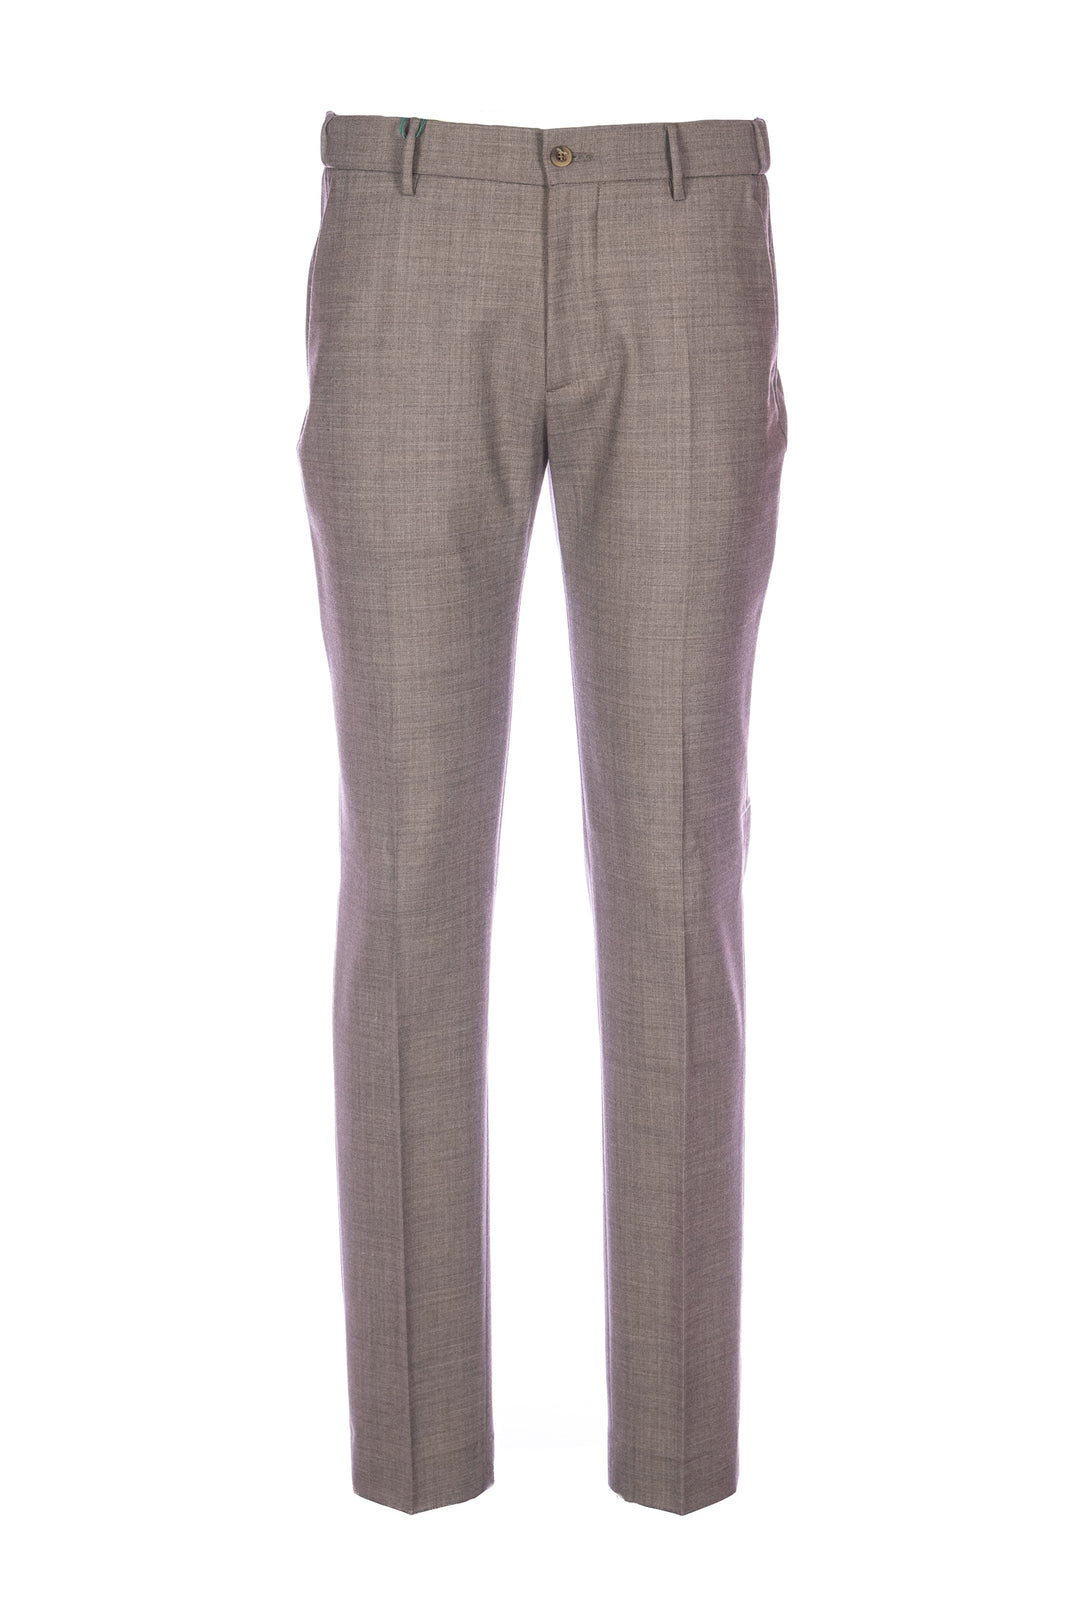 BERWICH Pantalone marrone chiaro in misto lana stretch - Mancinelli 1954